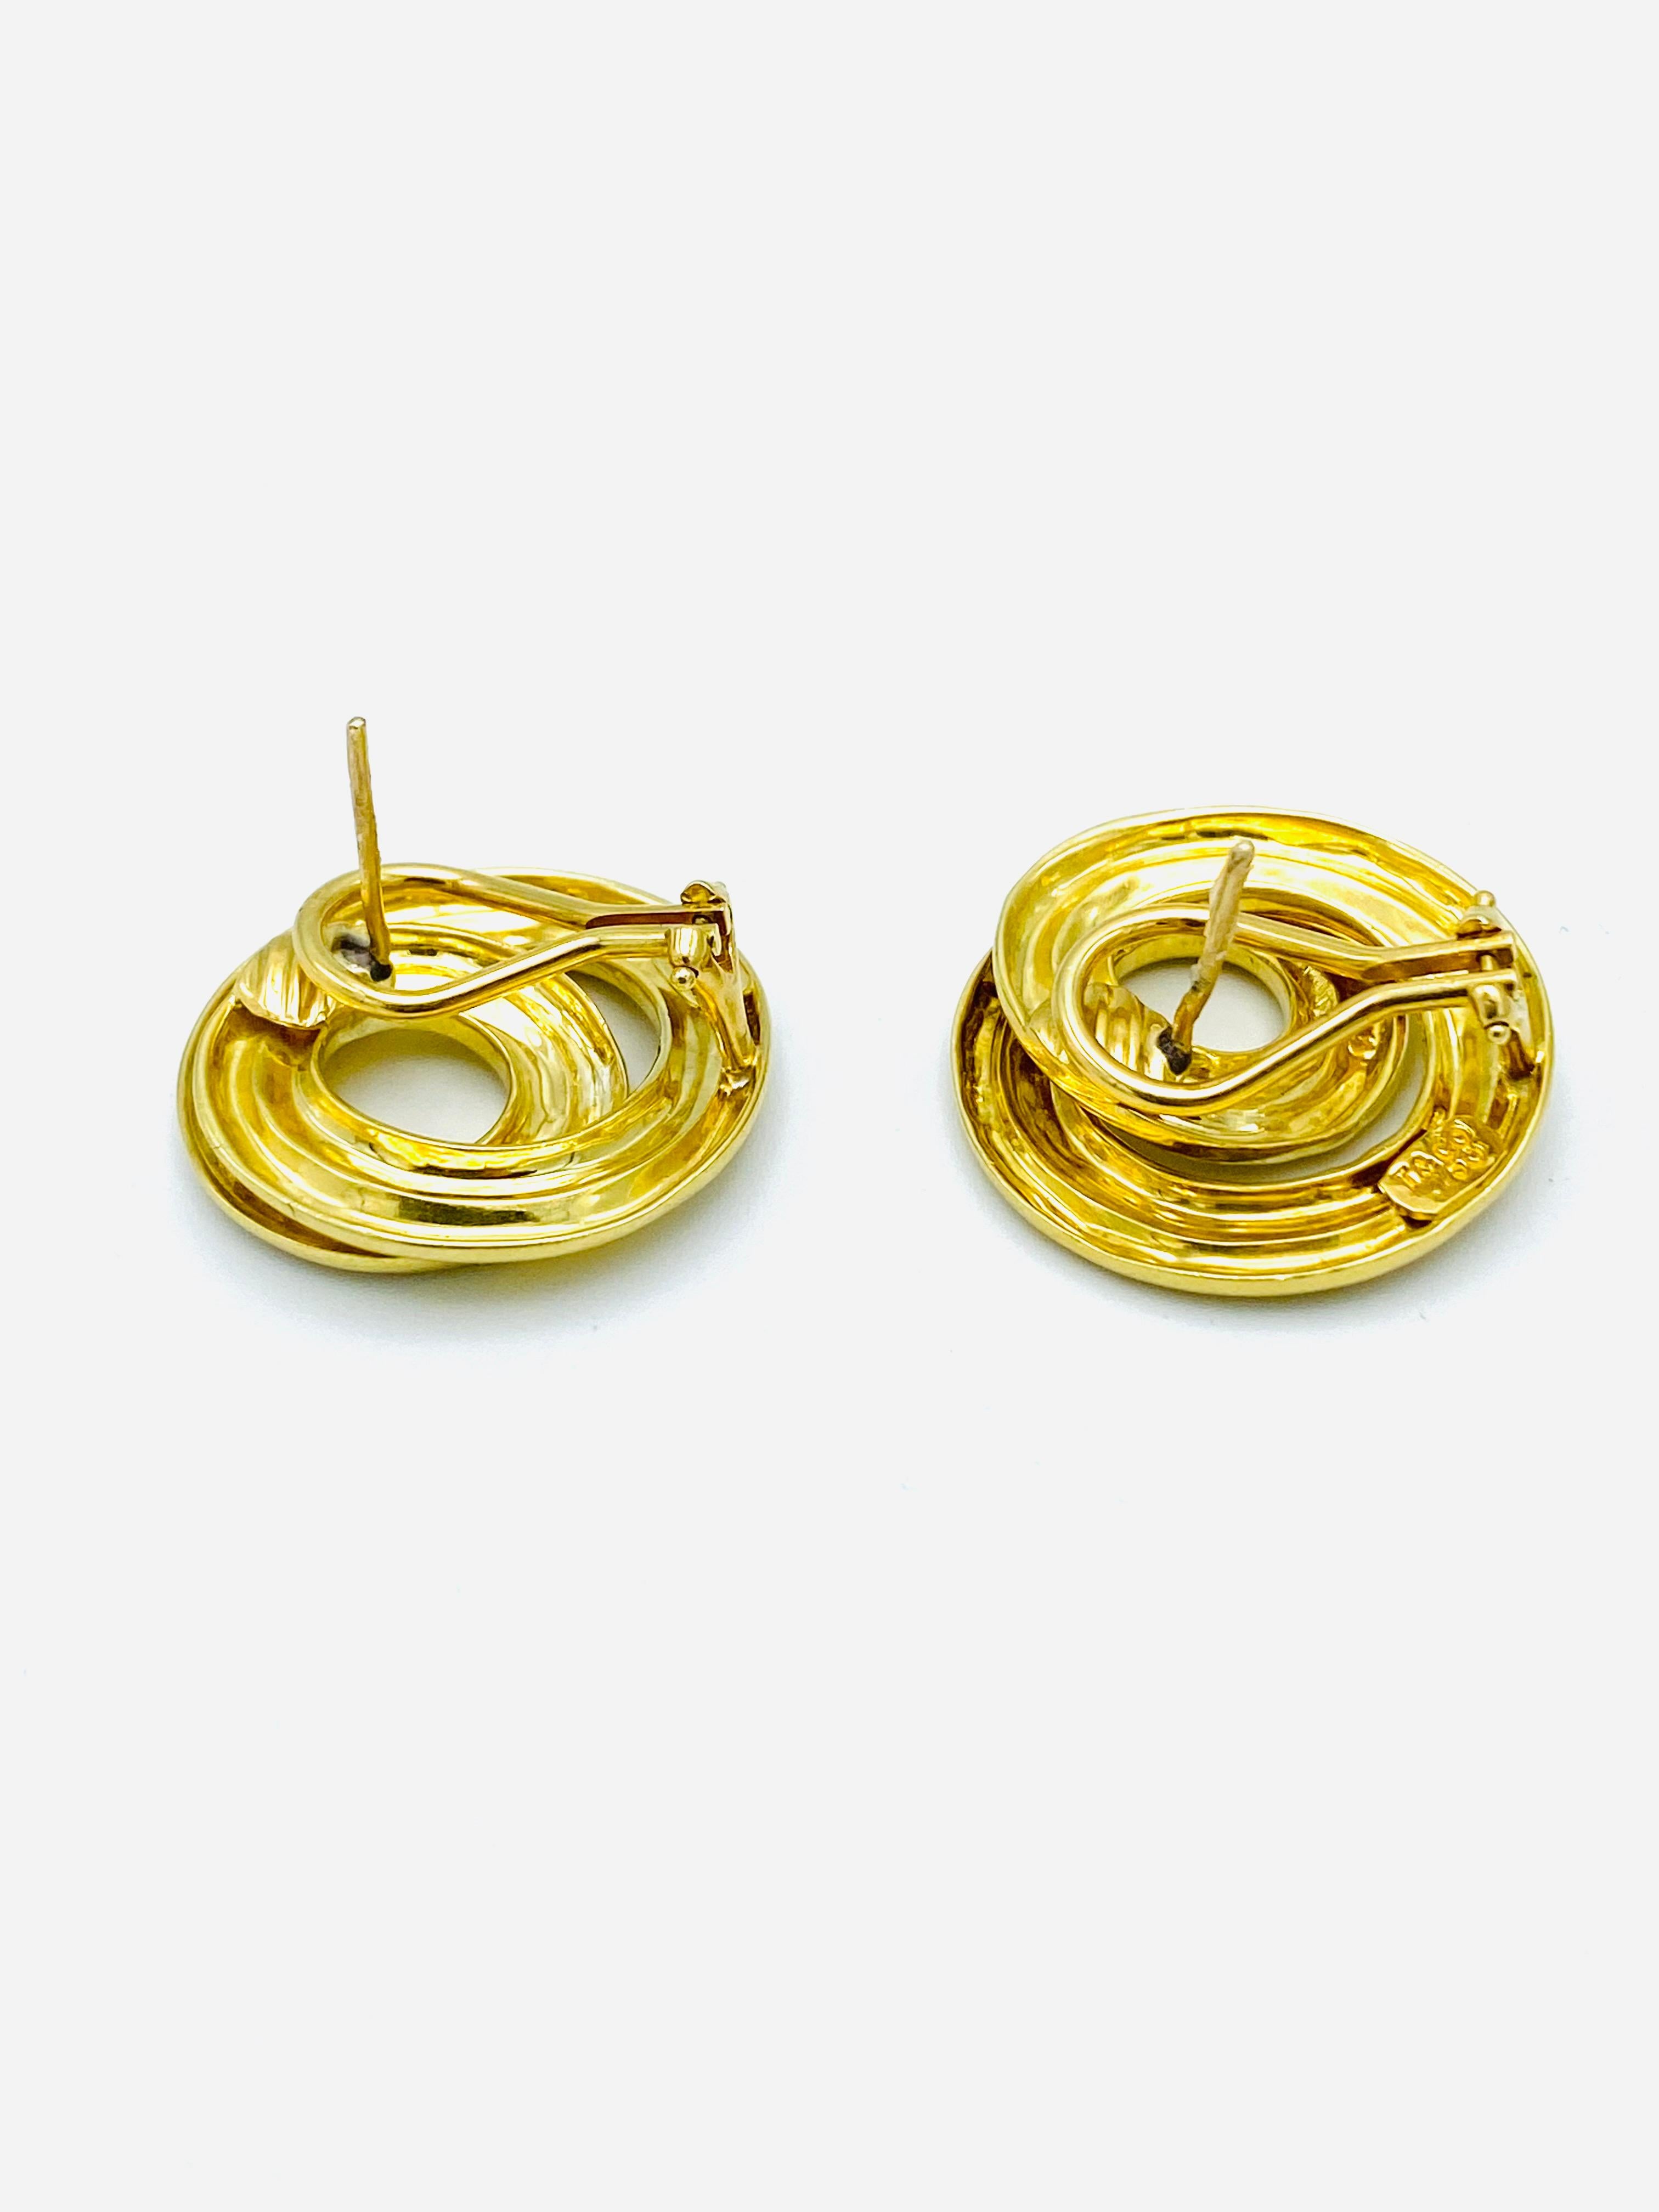 Vintage Tiffany & Co. 18K Yellow Gold Earrings 3